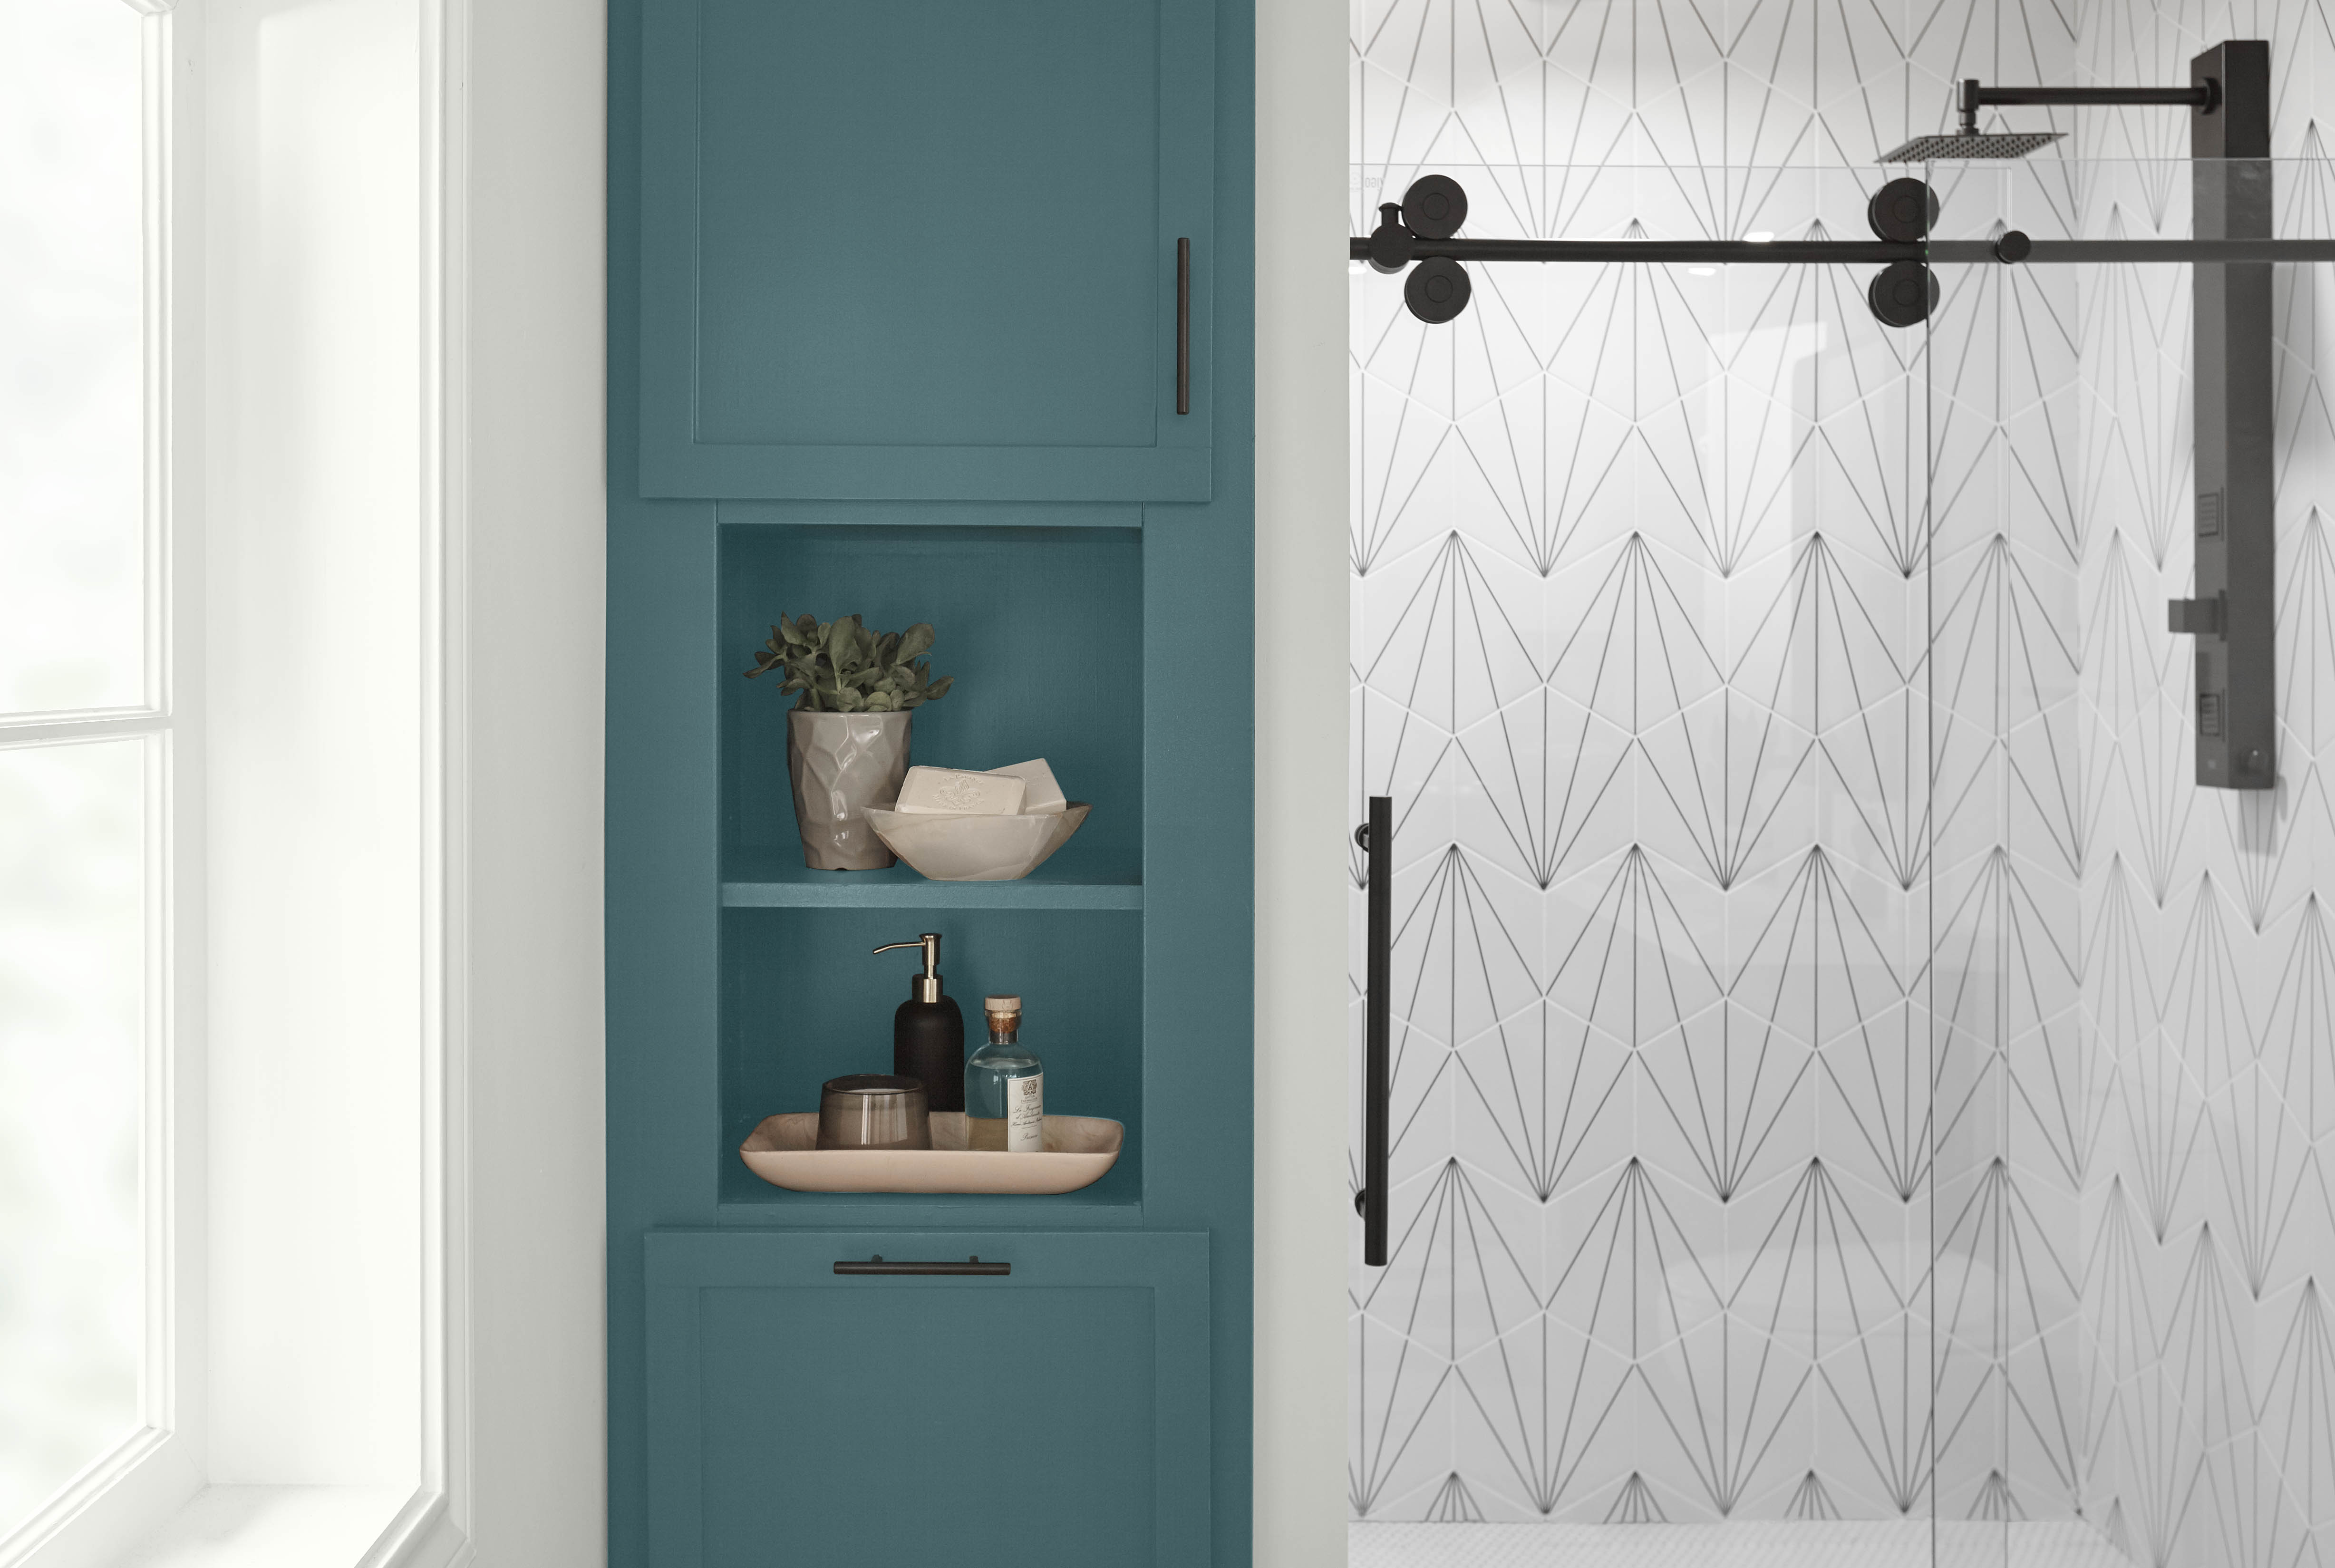 Une salle de bain moderne avec une armoire peinte en Sarcelle sophistiquée